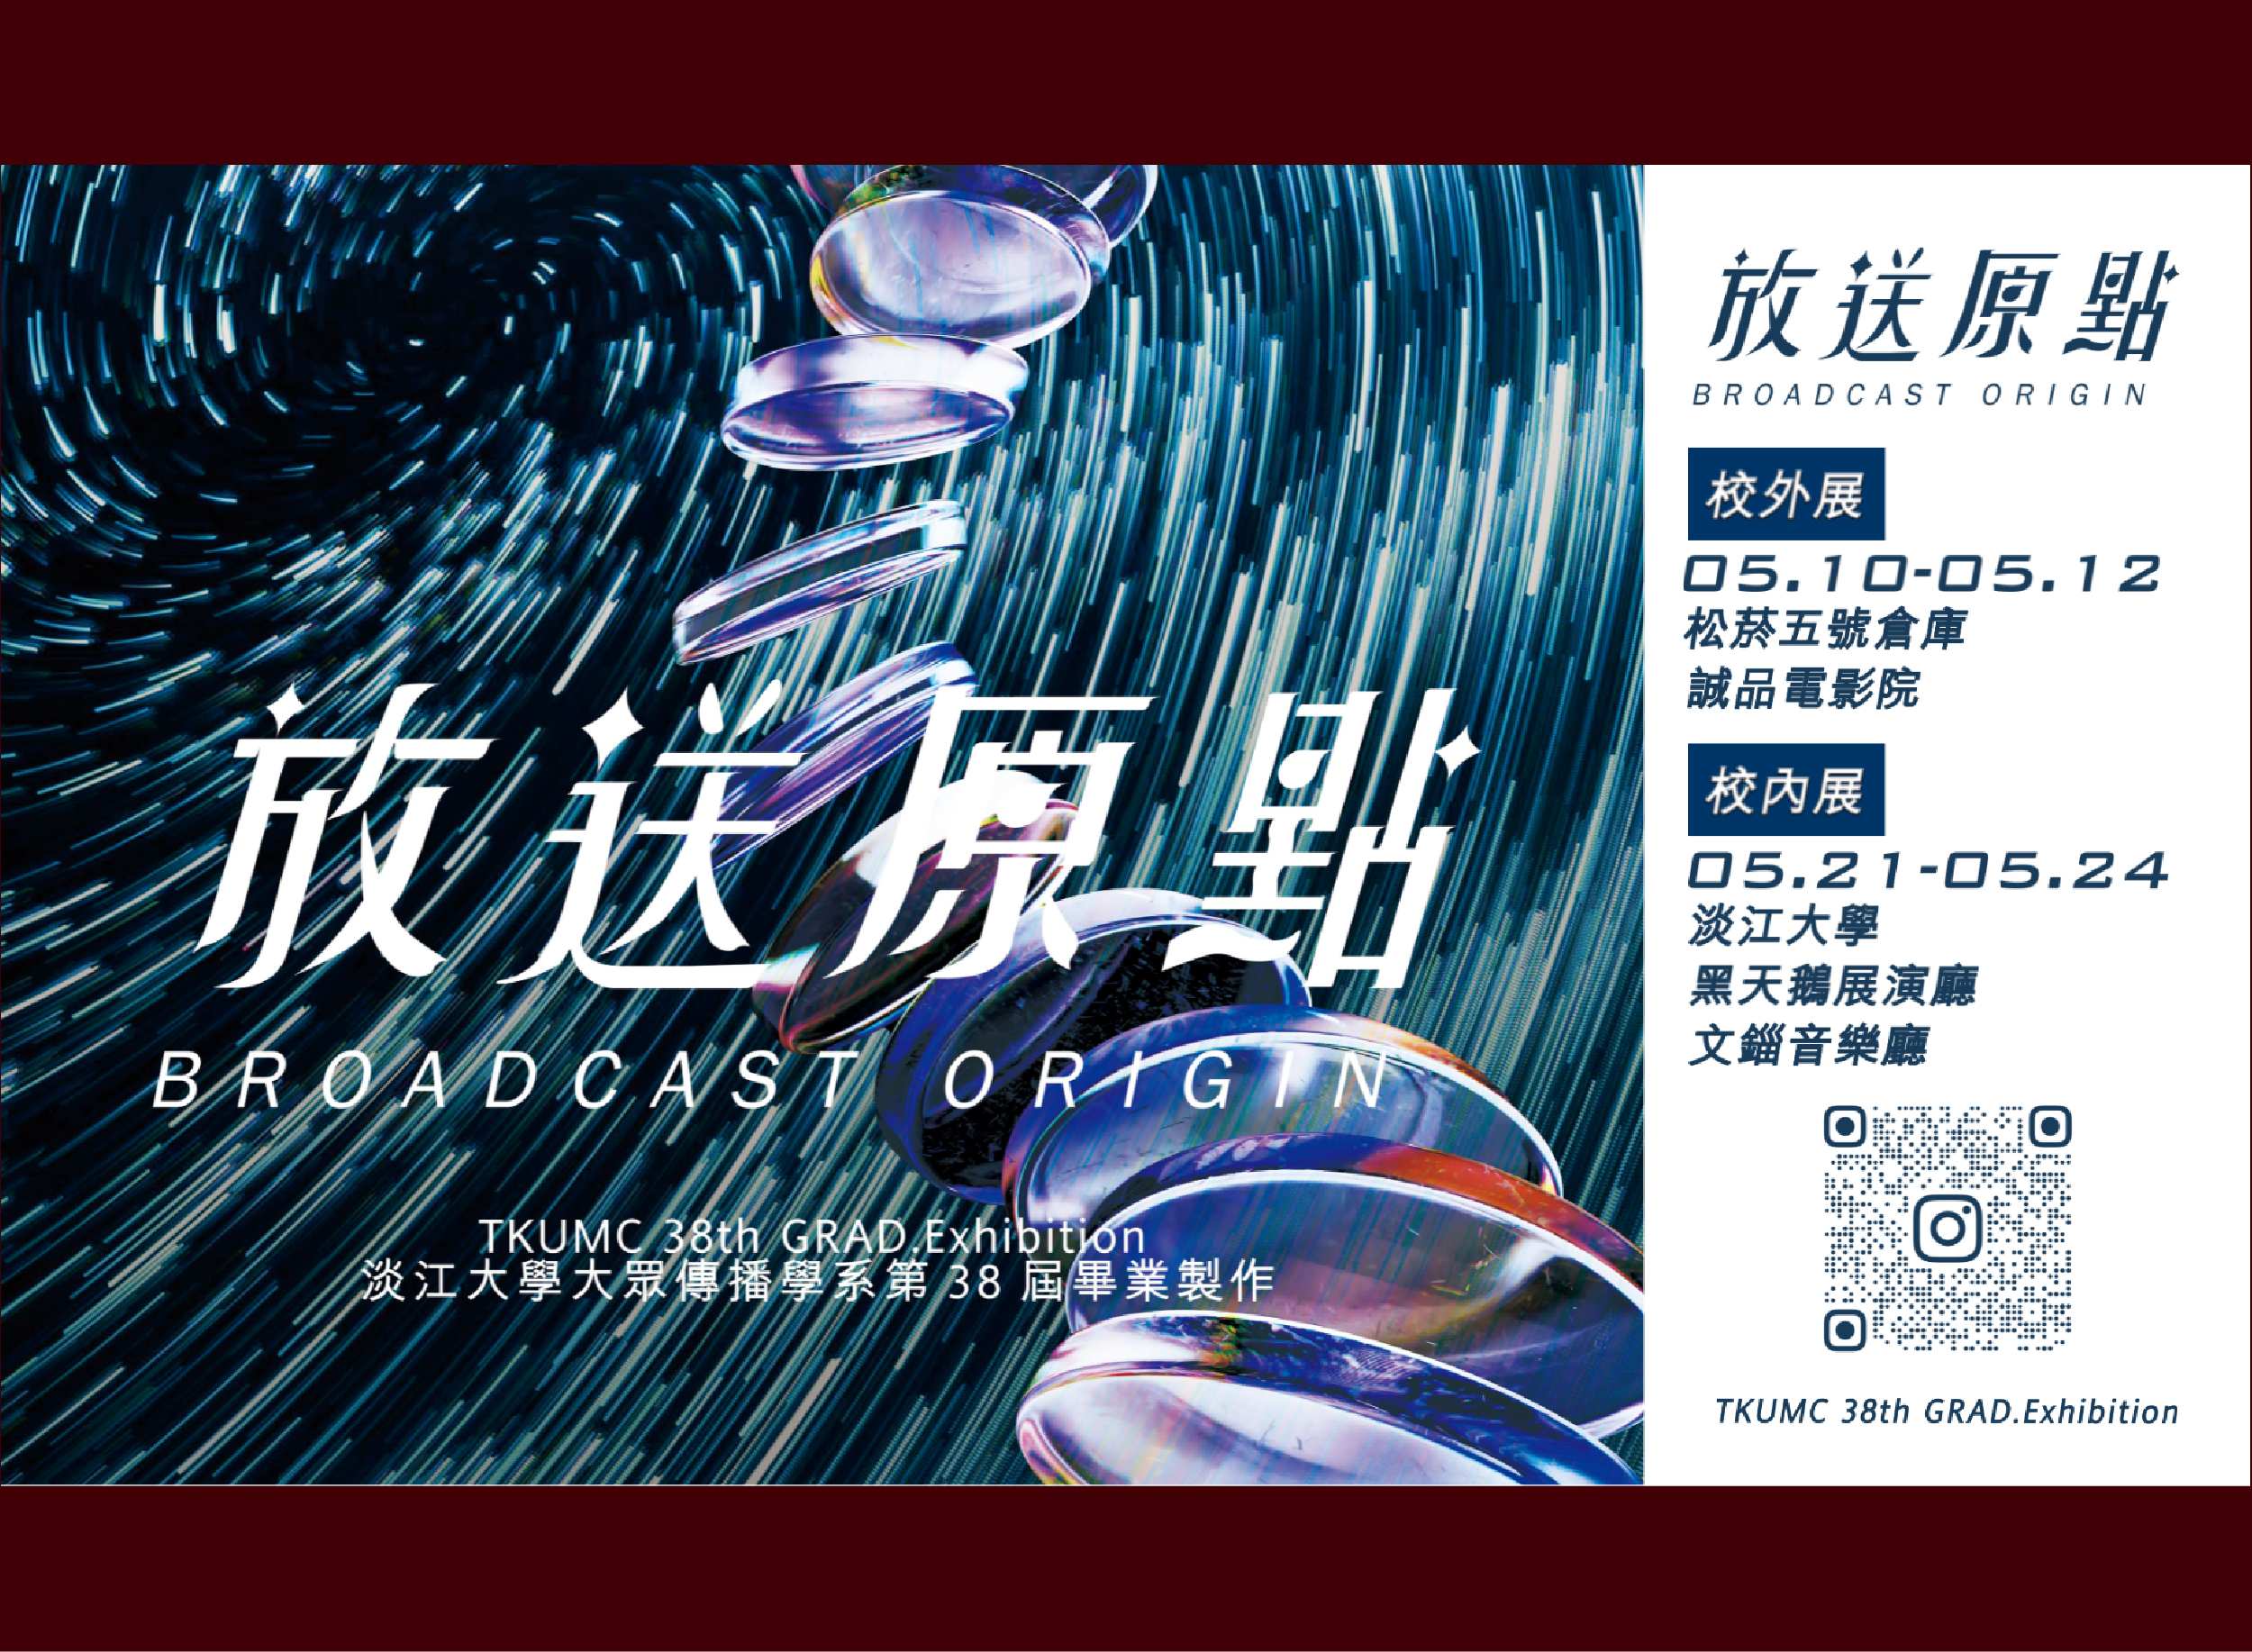 淡江大傳第38屆畢業製作成果展覽「放送原點 Broadcast Origin」